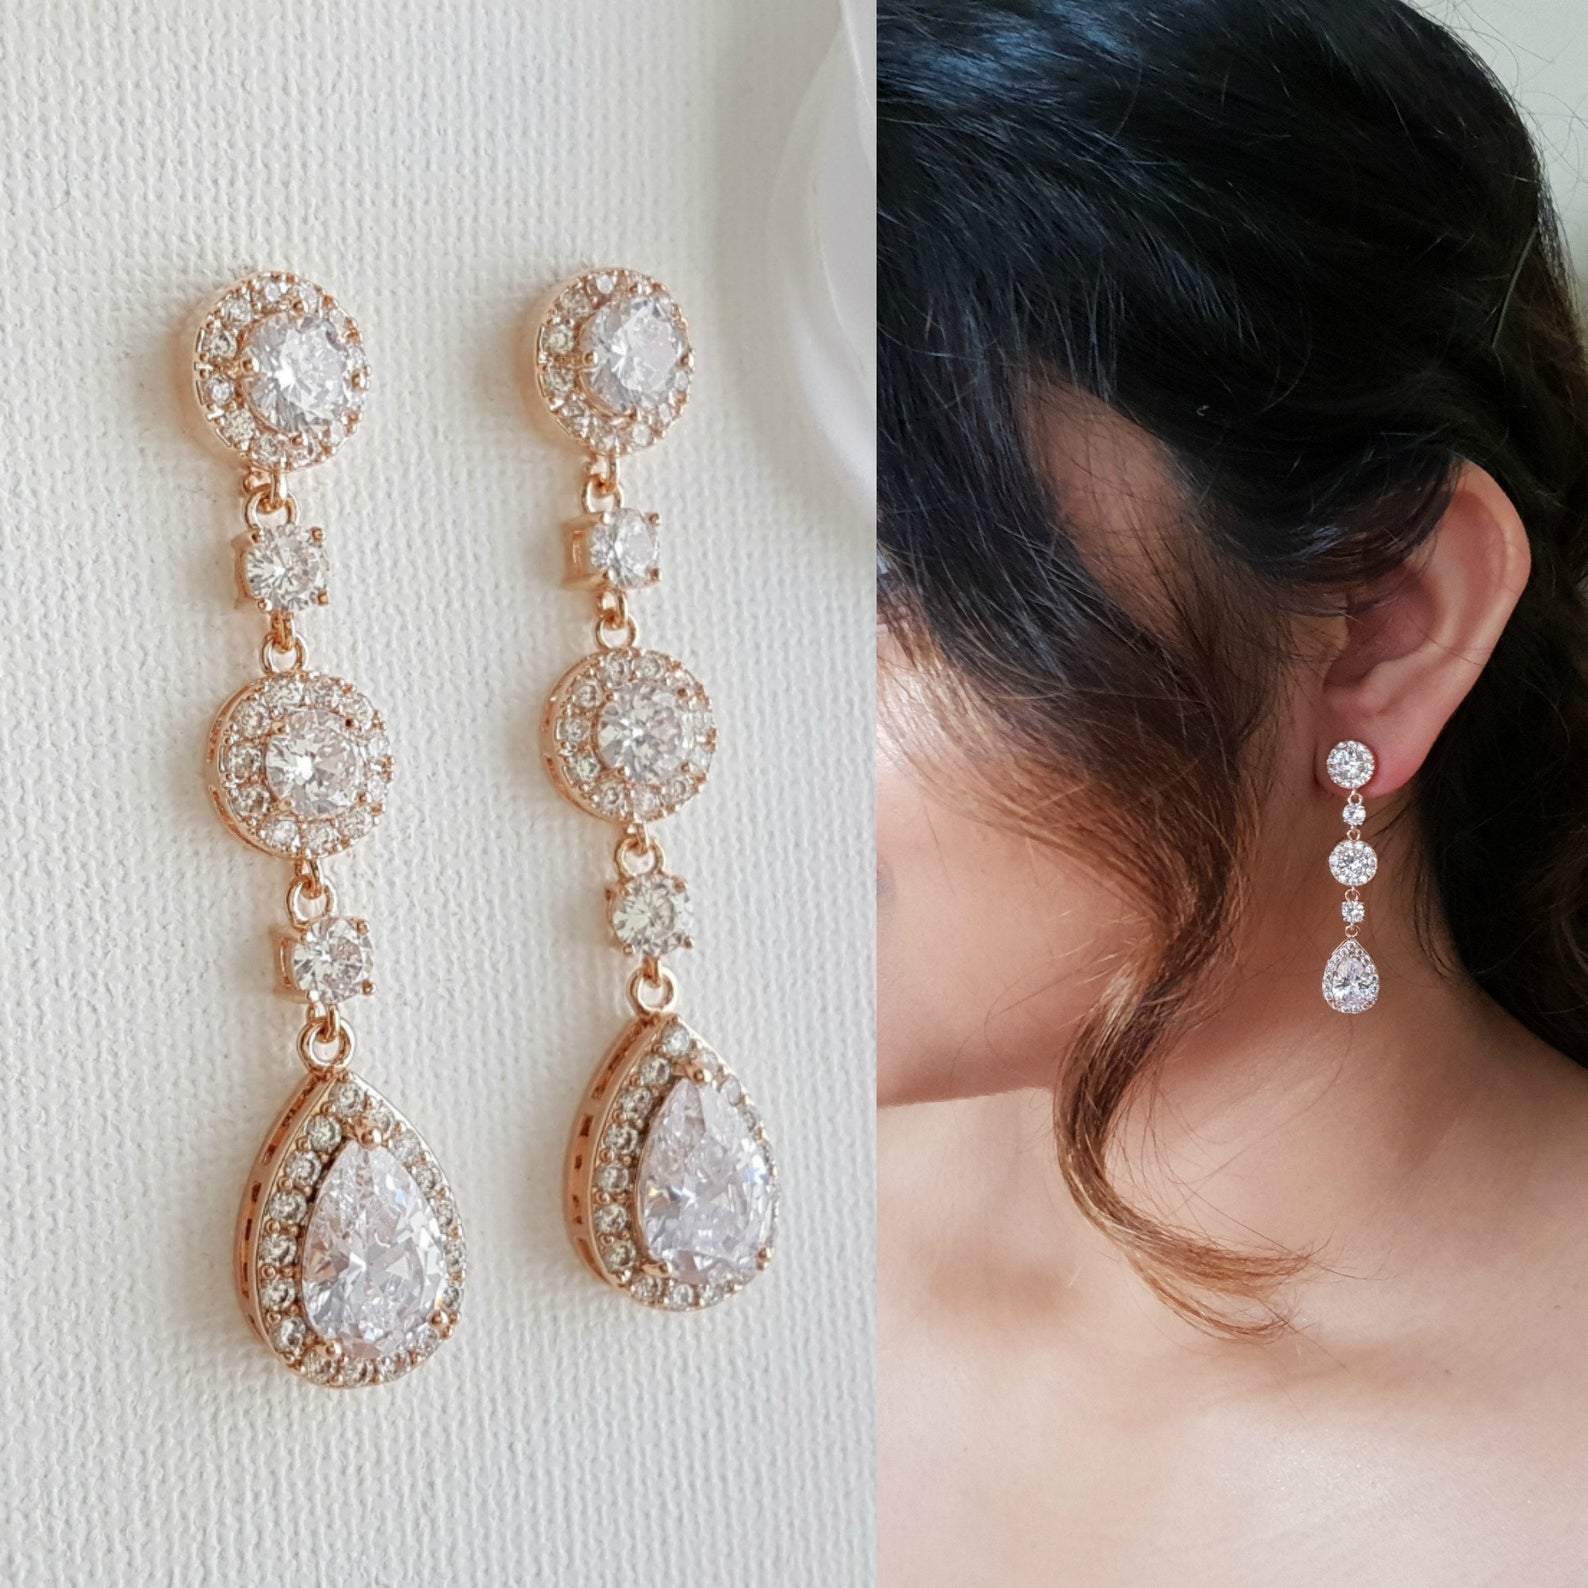 Champagne Bridal Earrings, Victorian Drop Earrings, Gold Wedding Earrings,  Chandelier Bridal Earrings, Long Dangle Earrings, Bridal Jewelry - Etsy